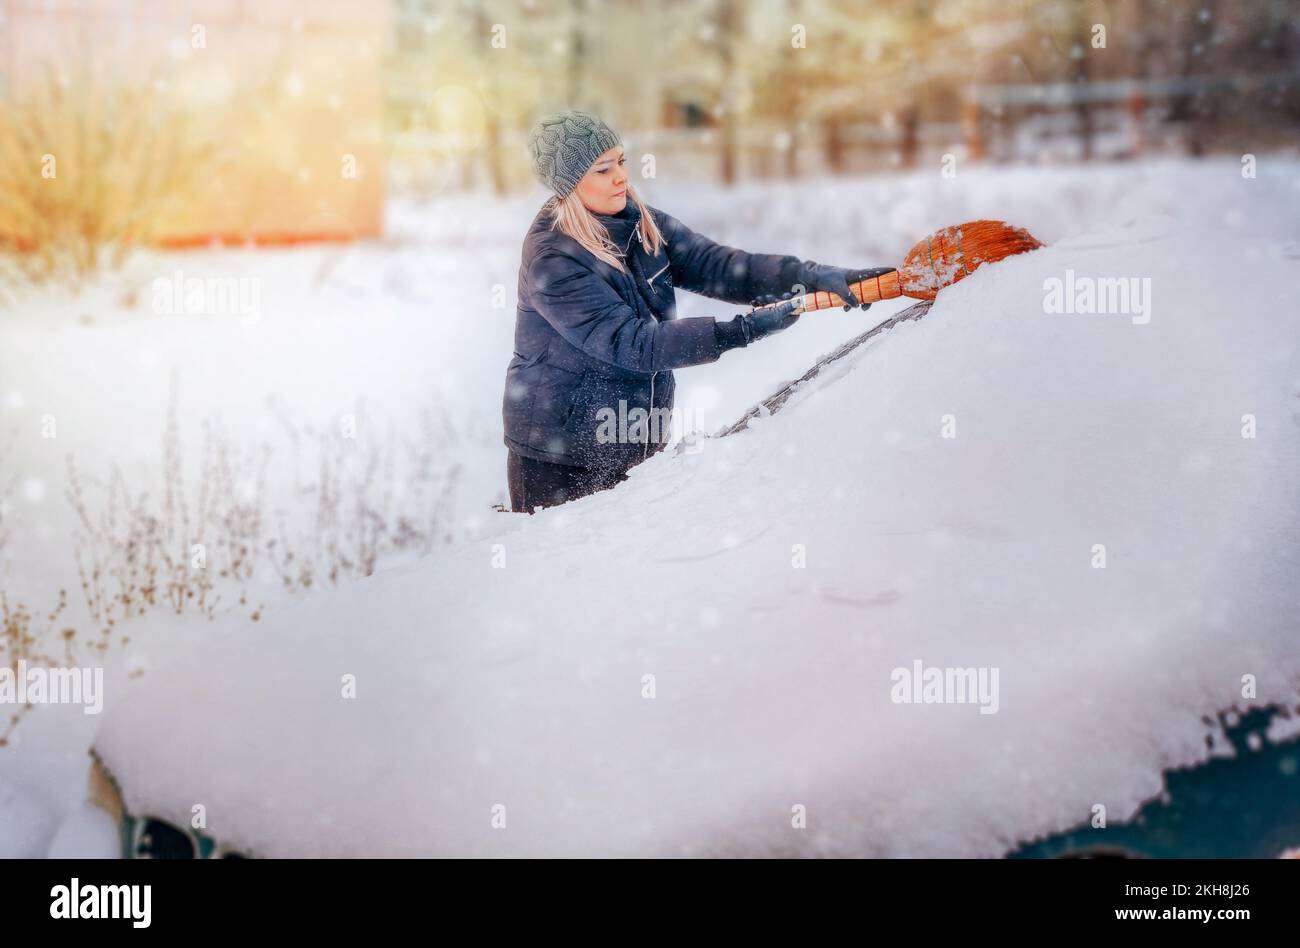 Balayer la neige avec un balai Banque de photographies et d'images à haute  résolution - Alamy